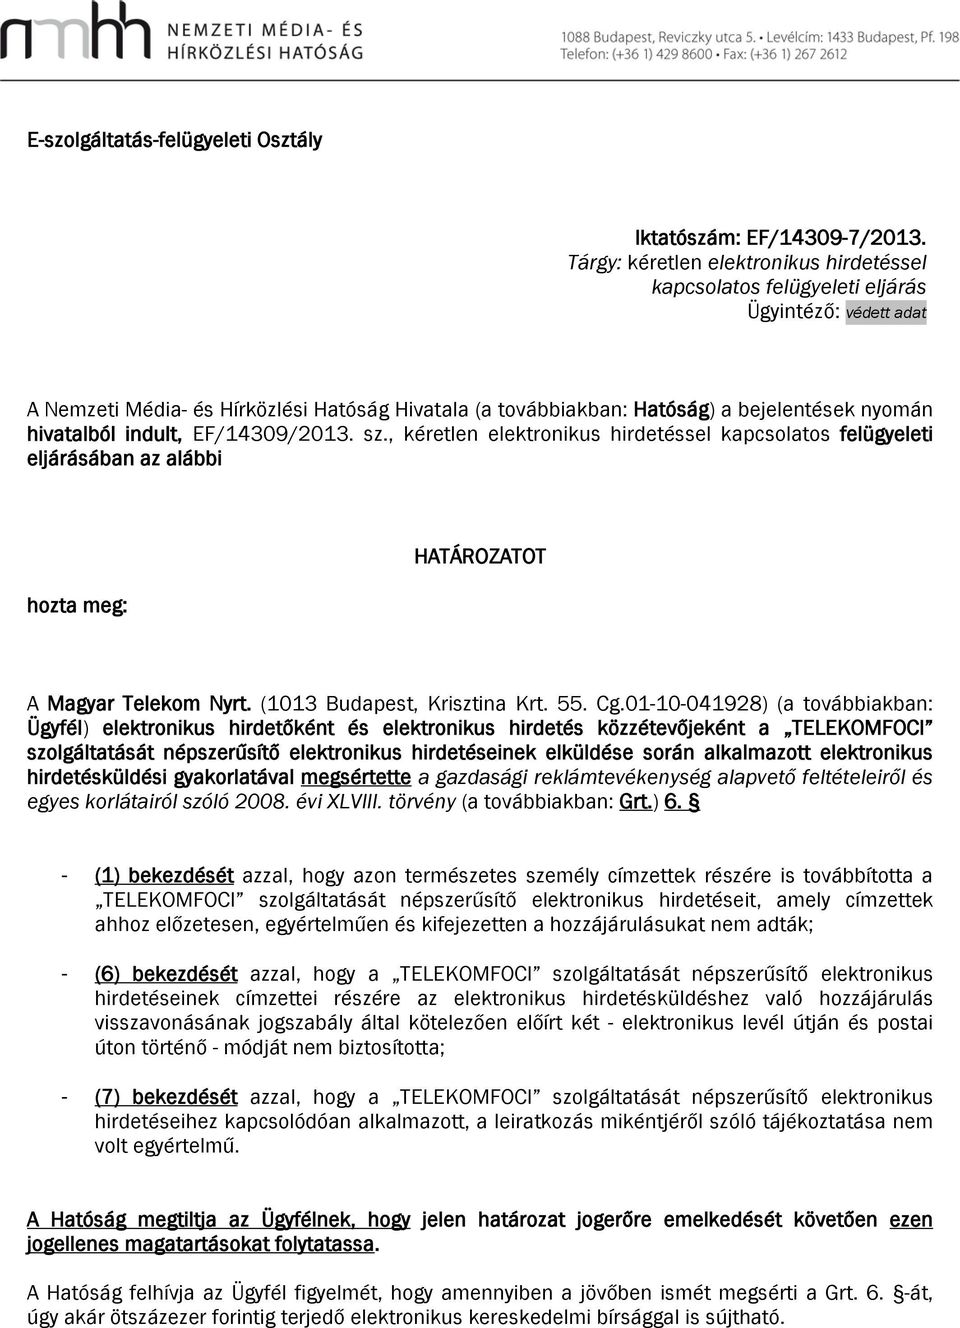 hivatalból indult, EF/14309/2013. sz., kéretlen elektronikus hirdetéssel kapcsolatos felügyeleti eljárásában az alábbi hozta meg: HATÁROZATOT A Magyar Telekom Nyrt. (1013 Budapest, Krisztina Krt. 55.